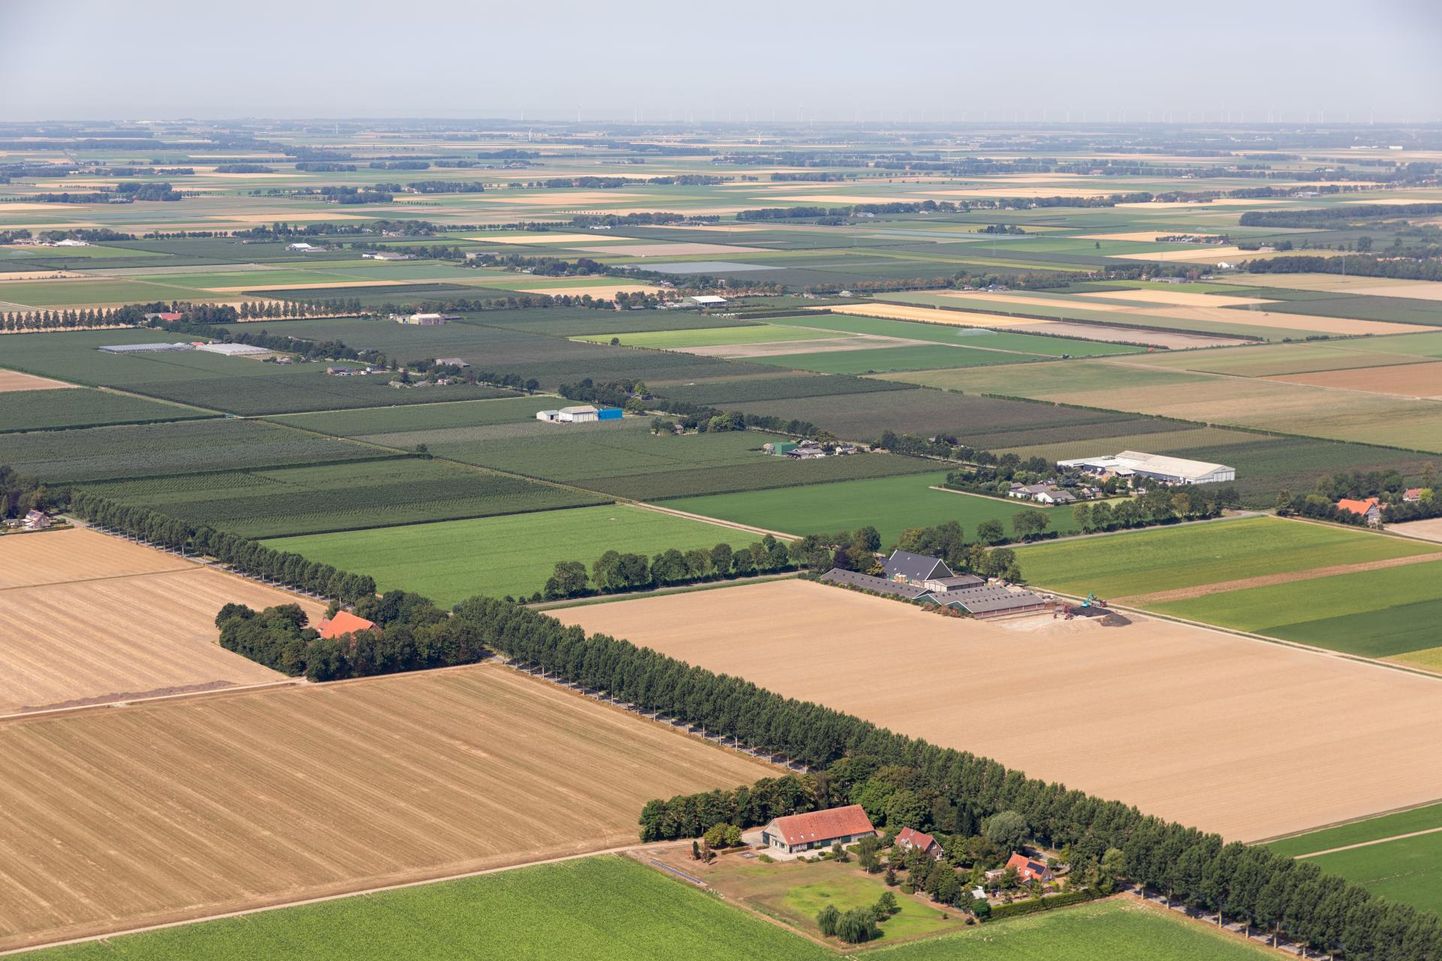 Hollandlasi teeb murelikuks, et intensiivse põllumajanduse tagajärjel kaob loodusest elurikkus ja liigiline mitmekesisus.